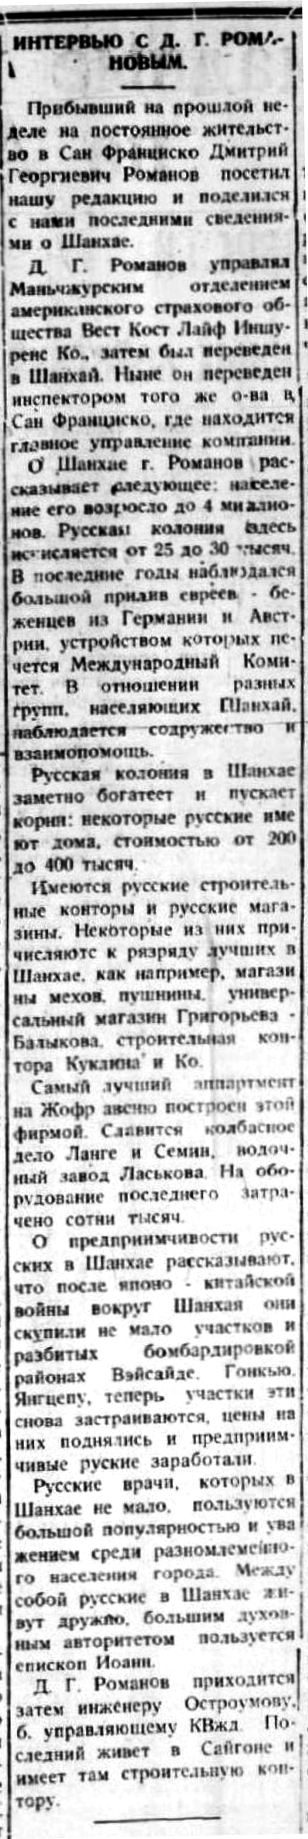 Русское обозрение 17 авг 1940